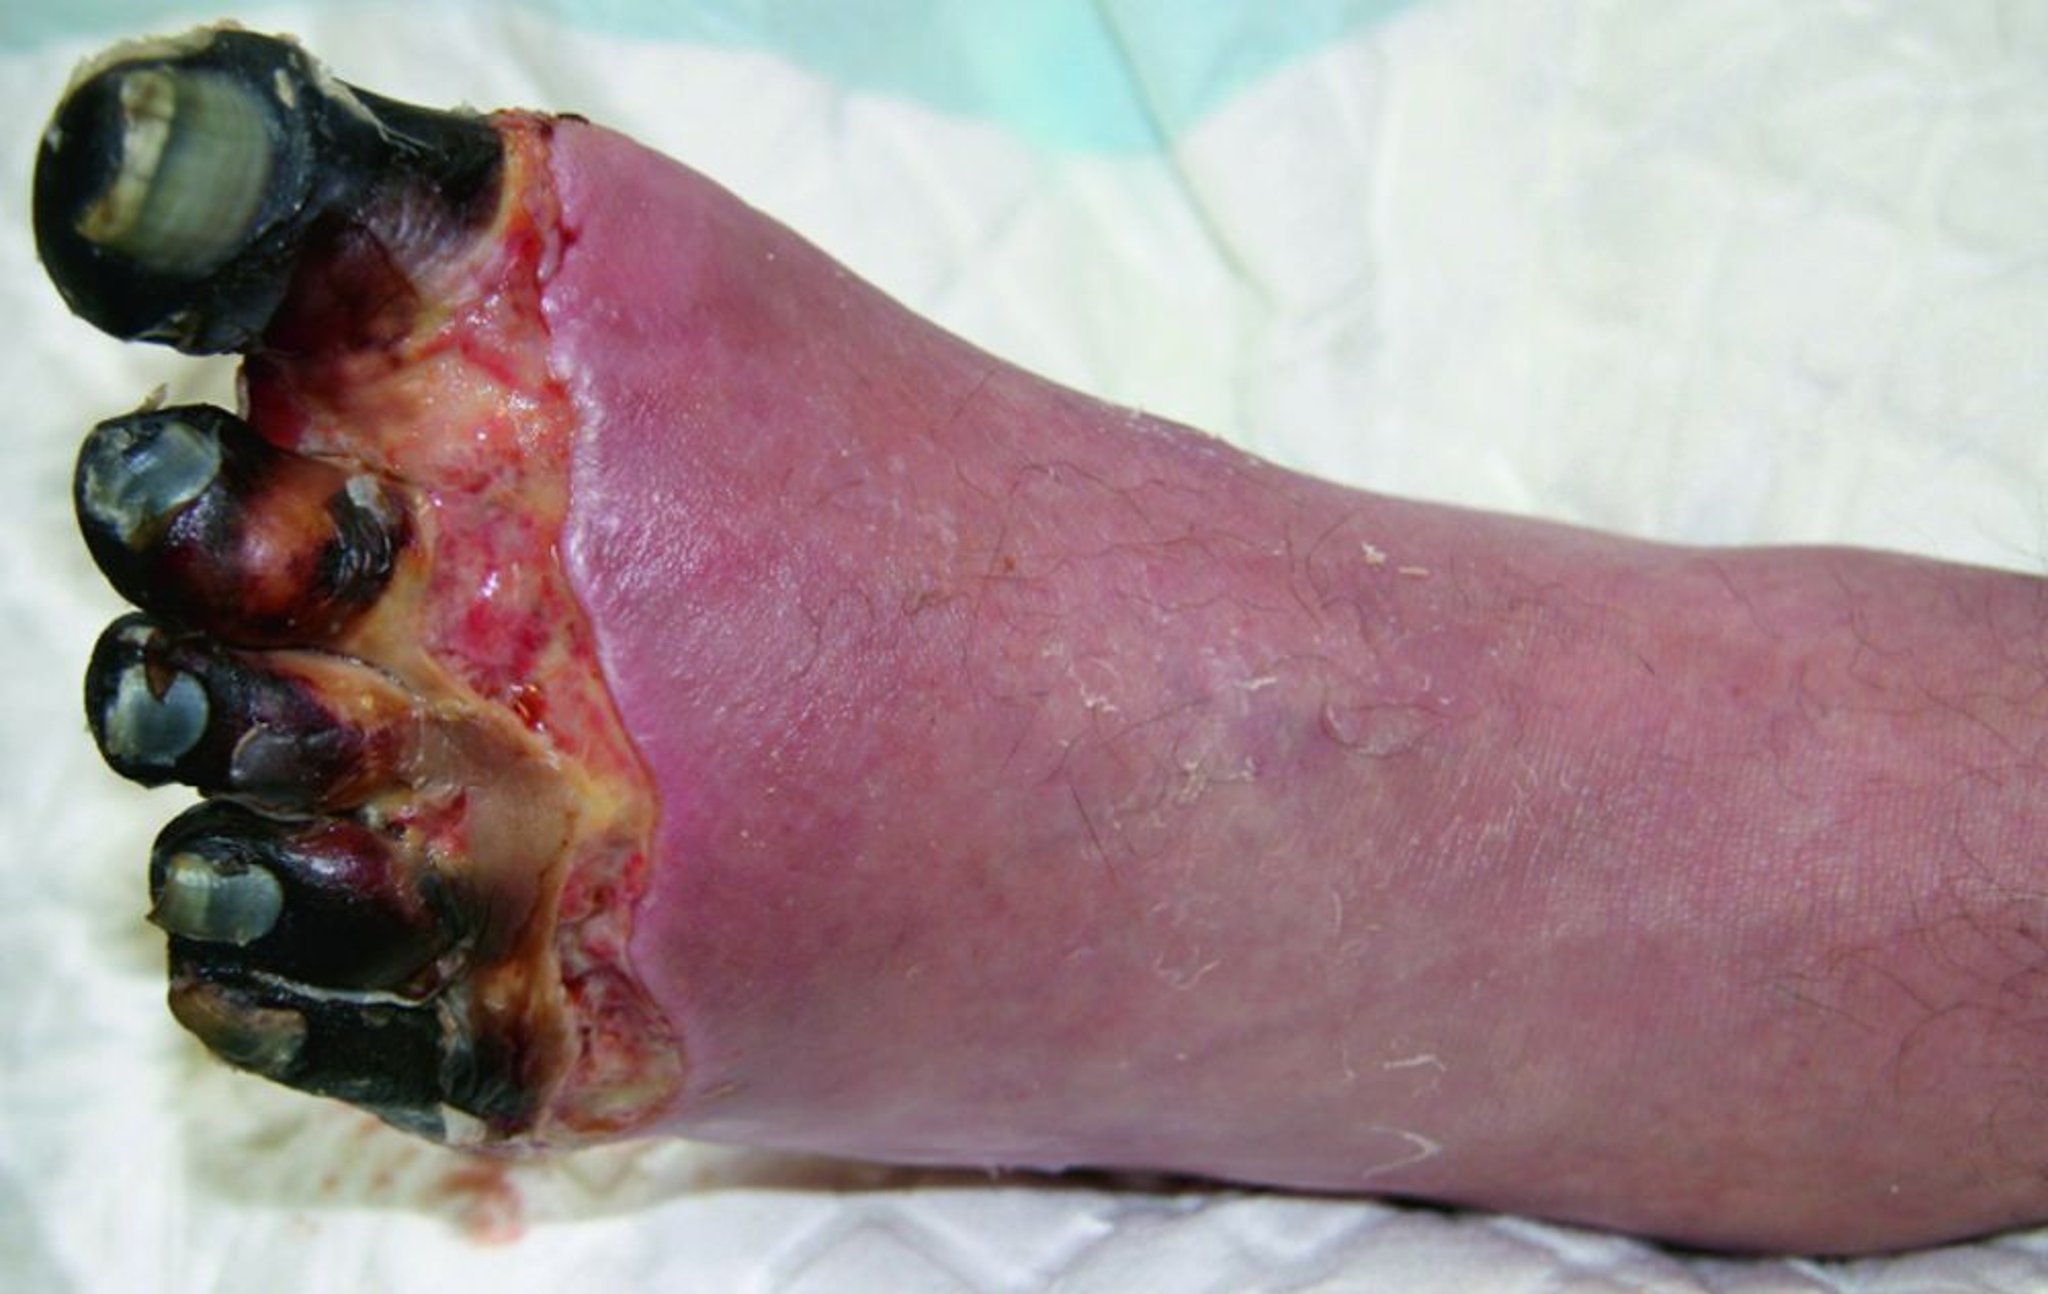 Congelación grave del pie con necrosis de los dedos de los pies